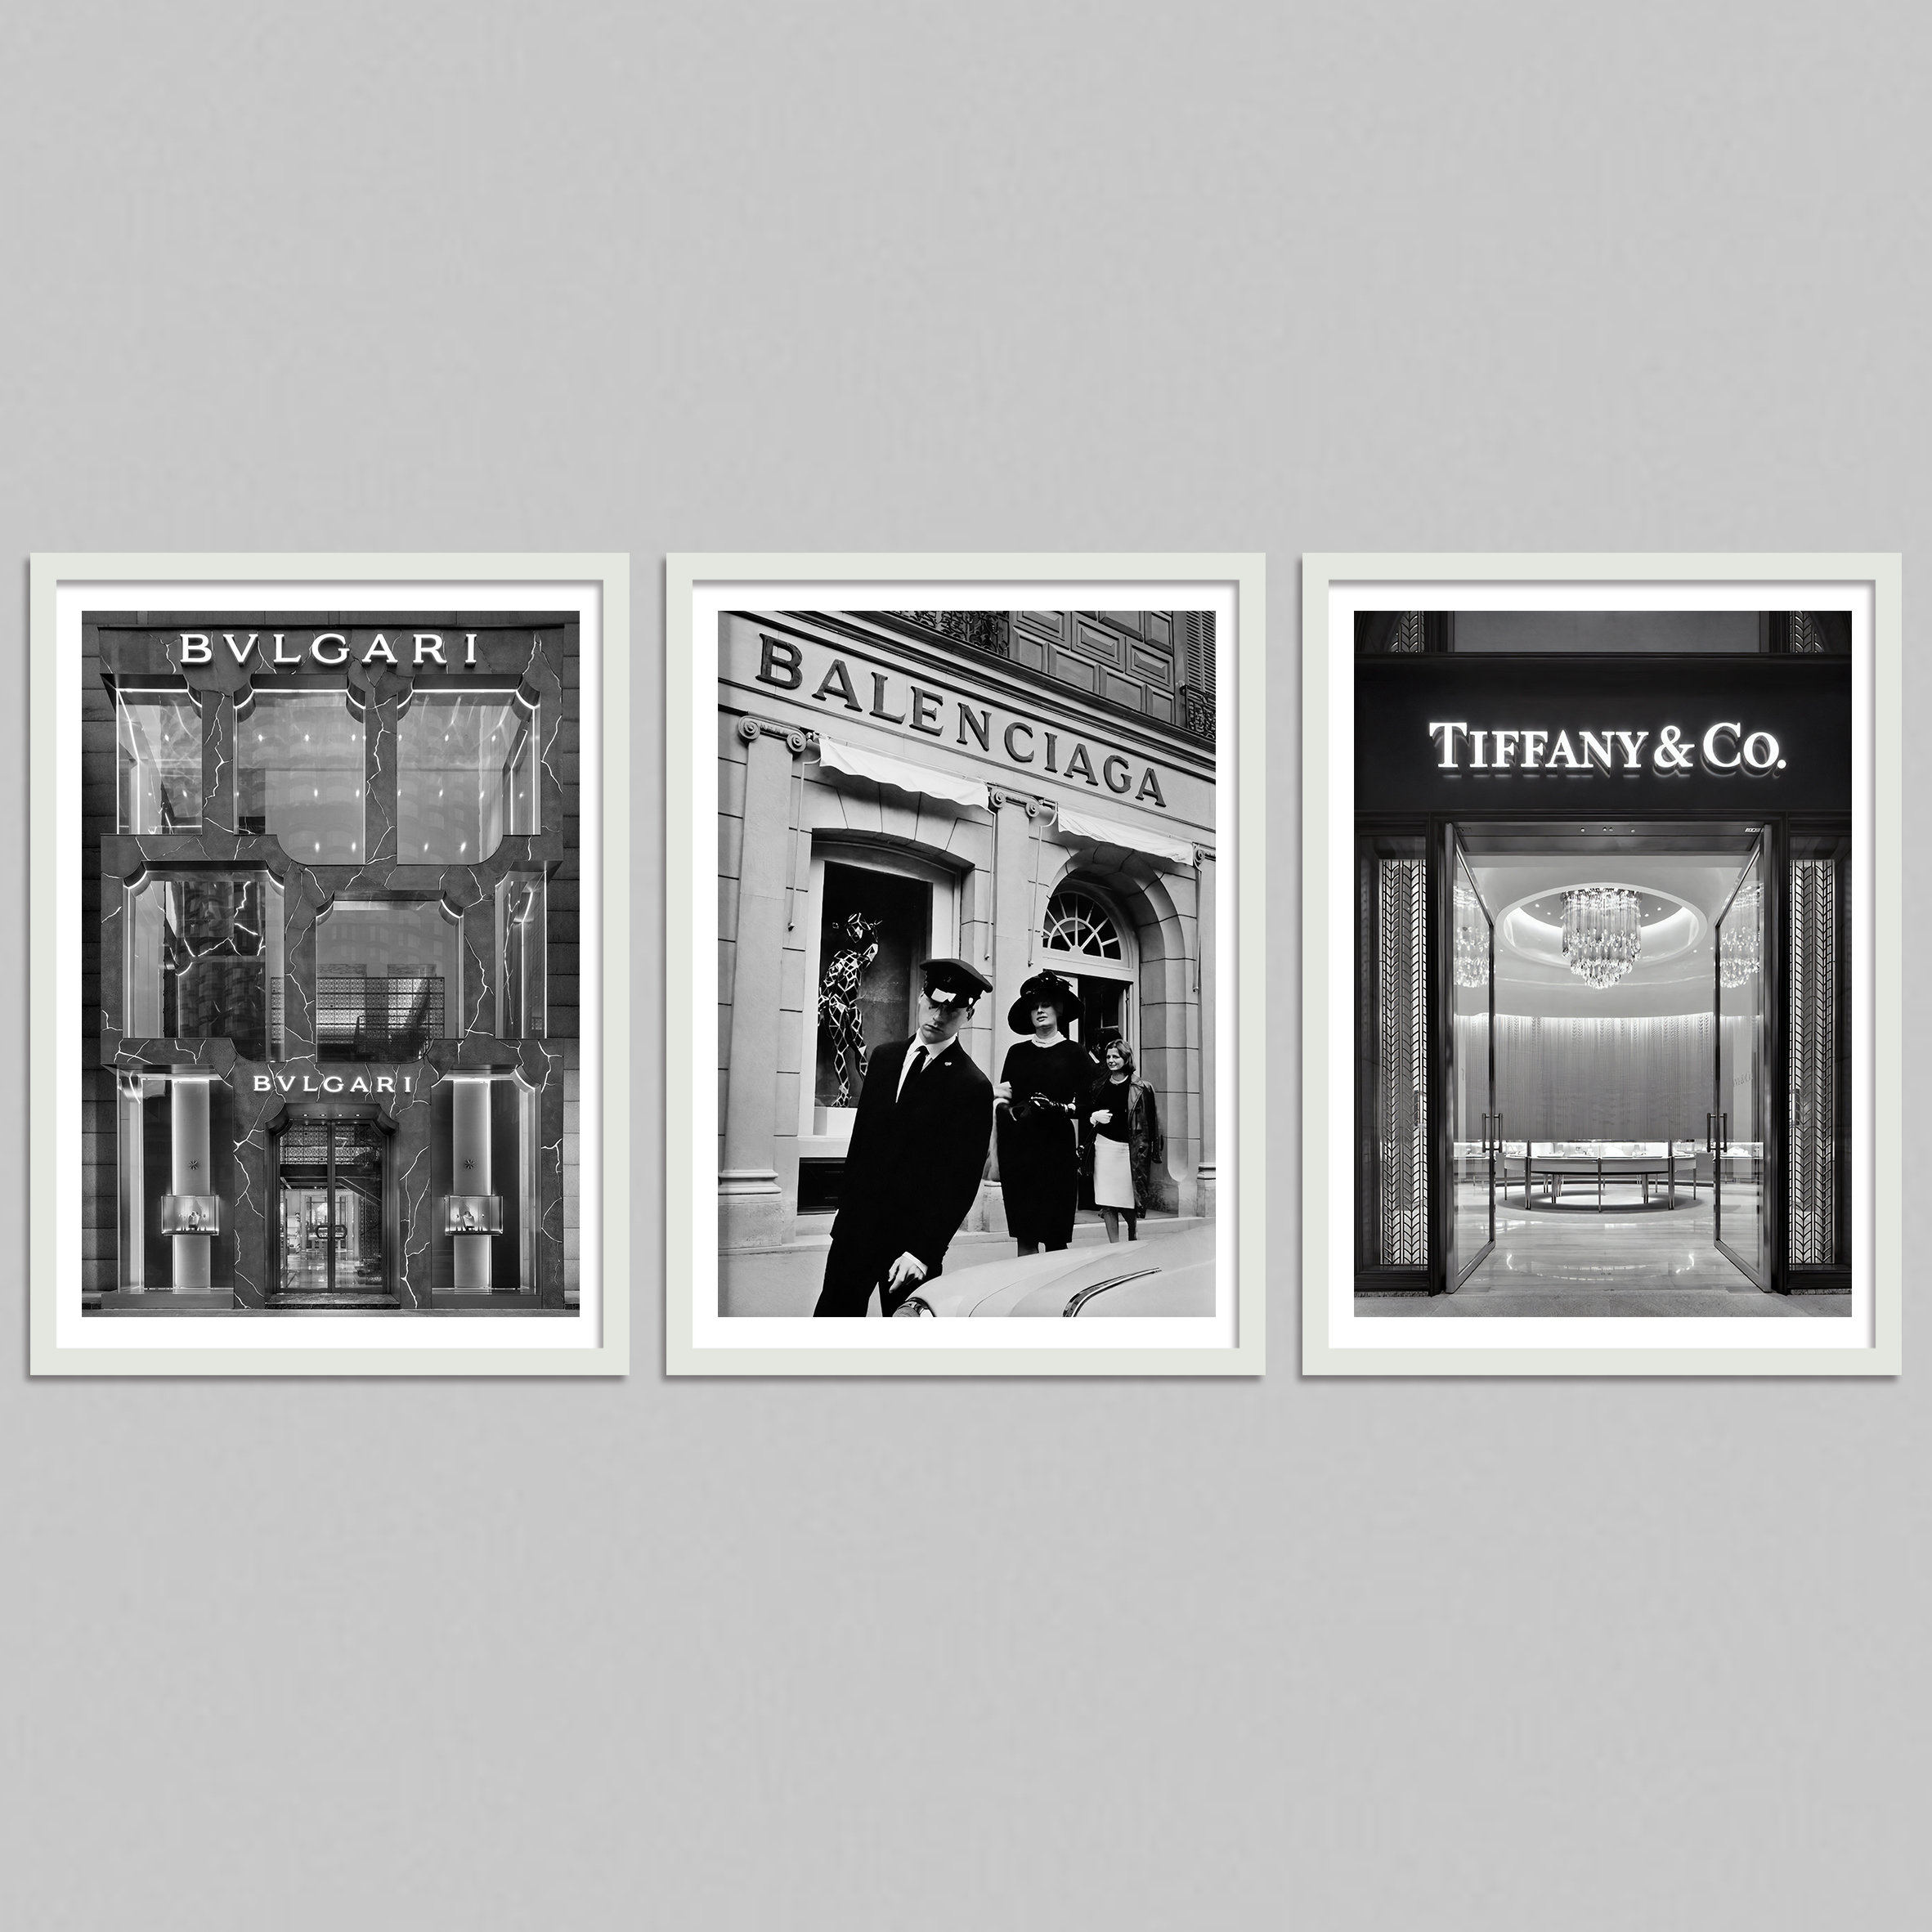 Huge Vintage Prada Store Framed Print – Shropshire Design